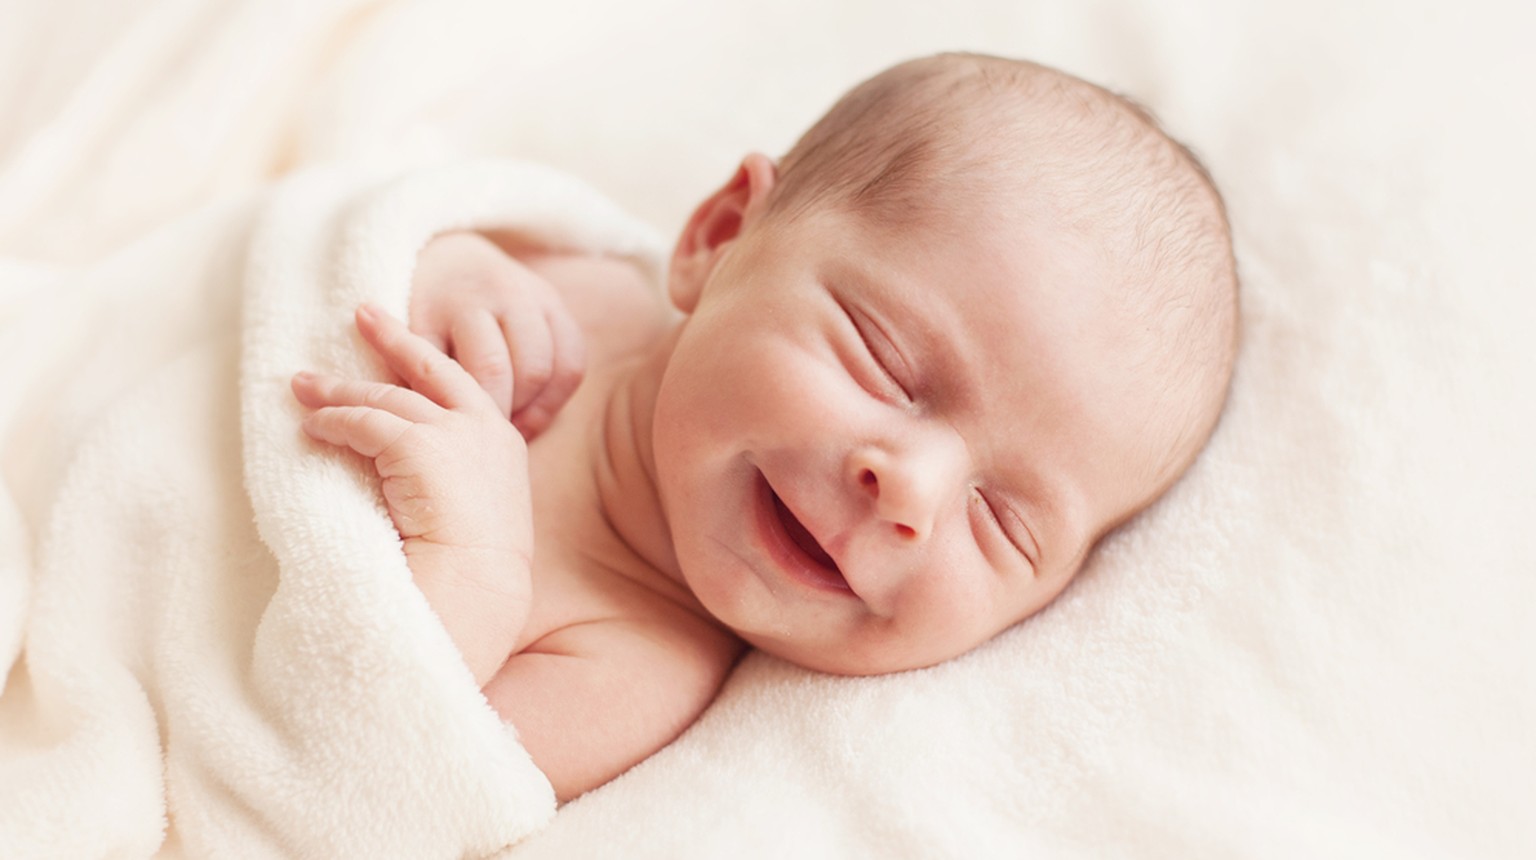 Das Vor- oder Engelslächlen eines sechs Tage alten Babys. Meist verzieht dieser angeborene Reflex das kleine Gesichtlein im Schlaf zu einem Lächeln. Ab der vierten Woche folgt das allgemeine Lächeln und schliesslich das bewusst gewählte, an bestimmte Personen gerichtete Lächeln.